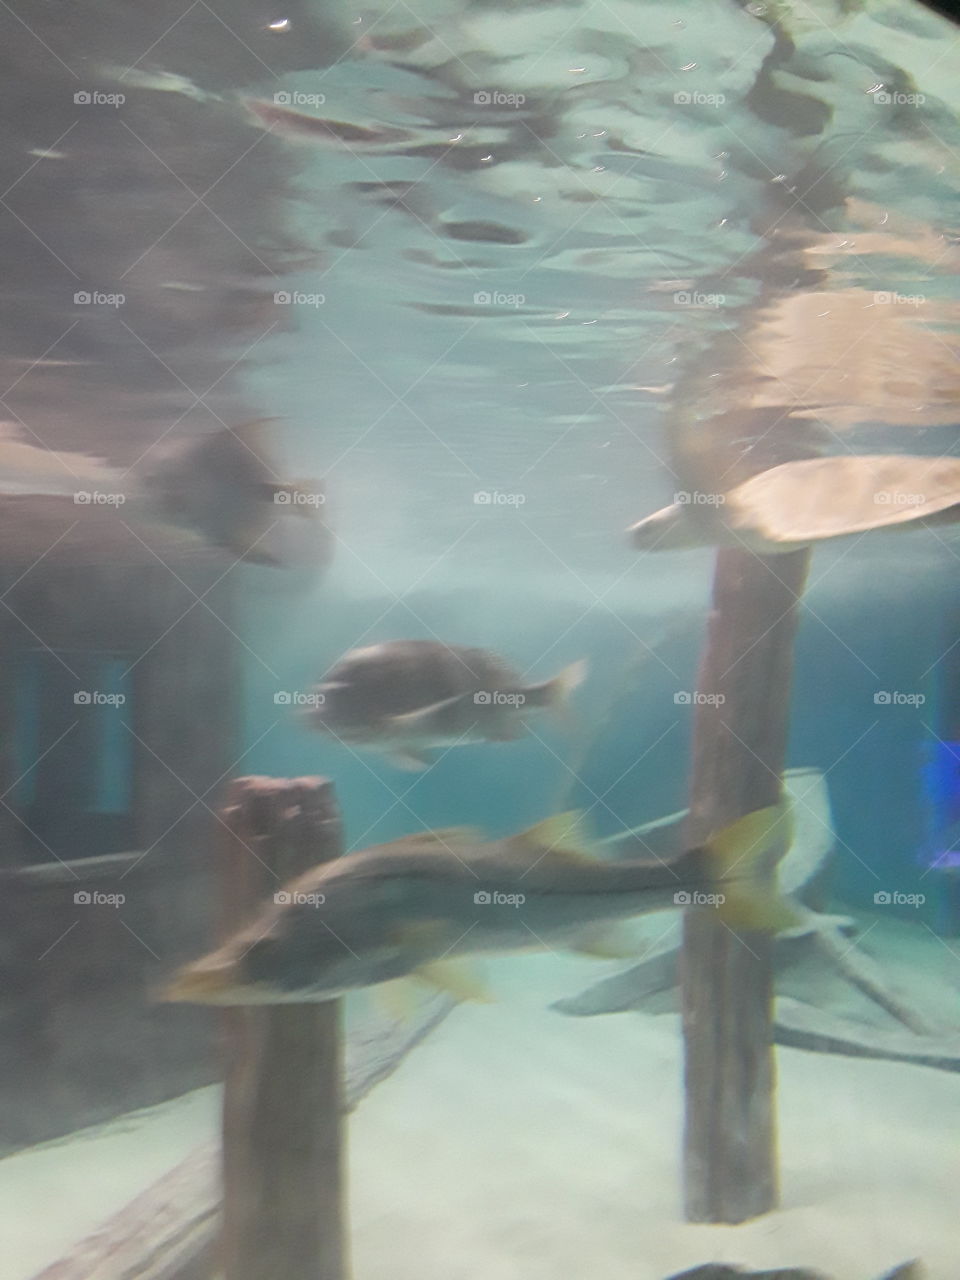 under aquarium fish and boat